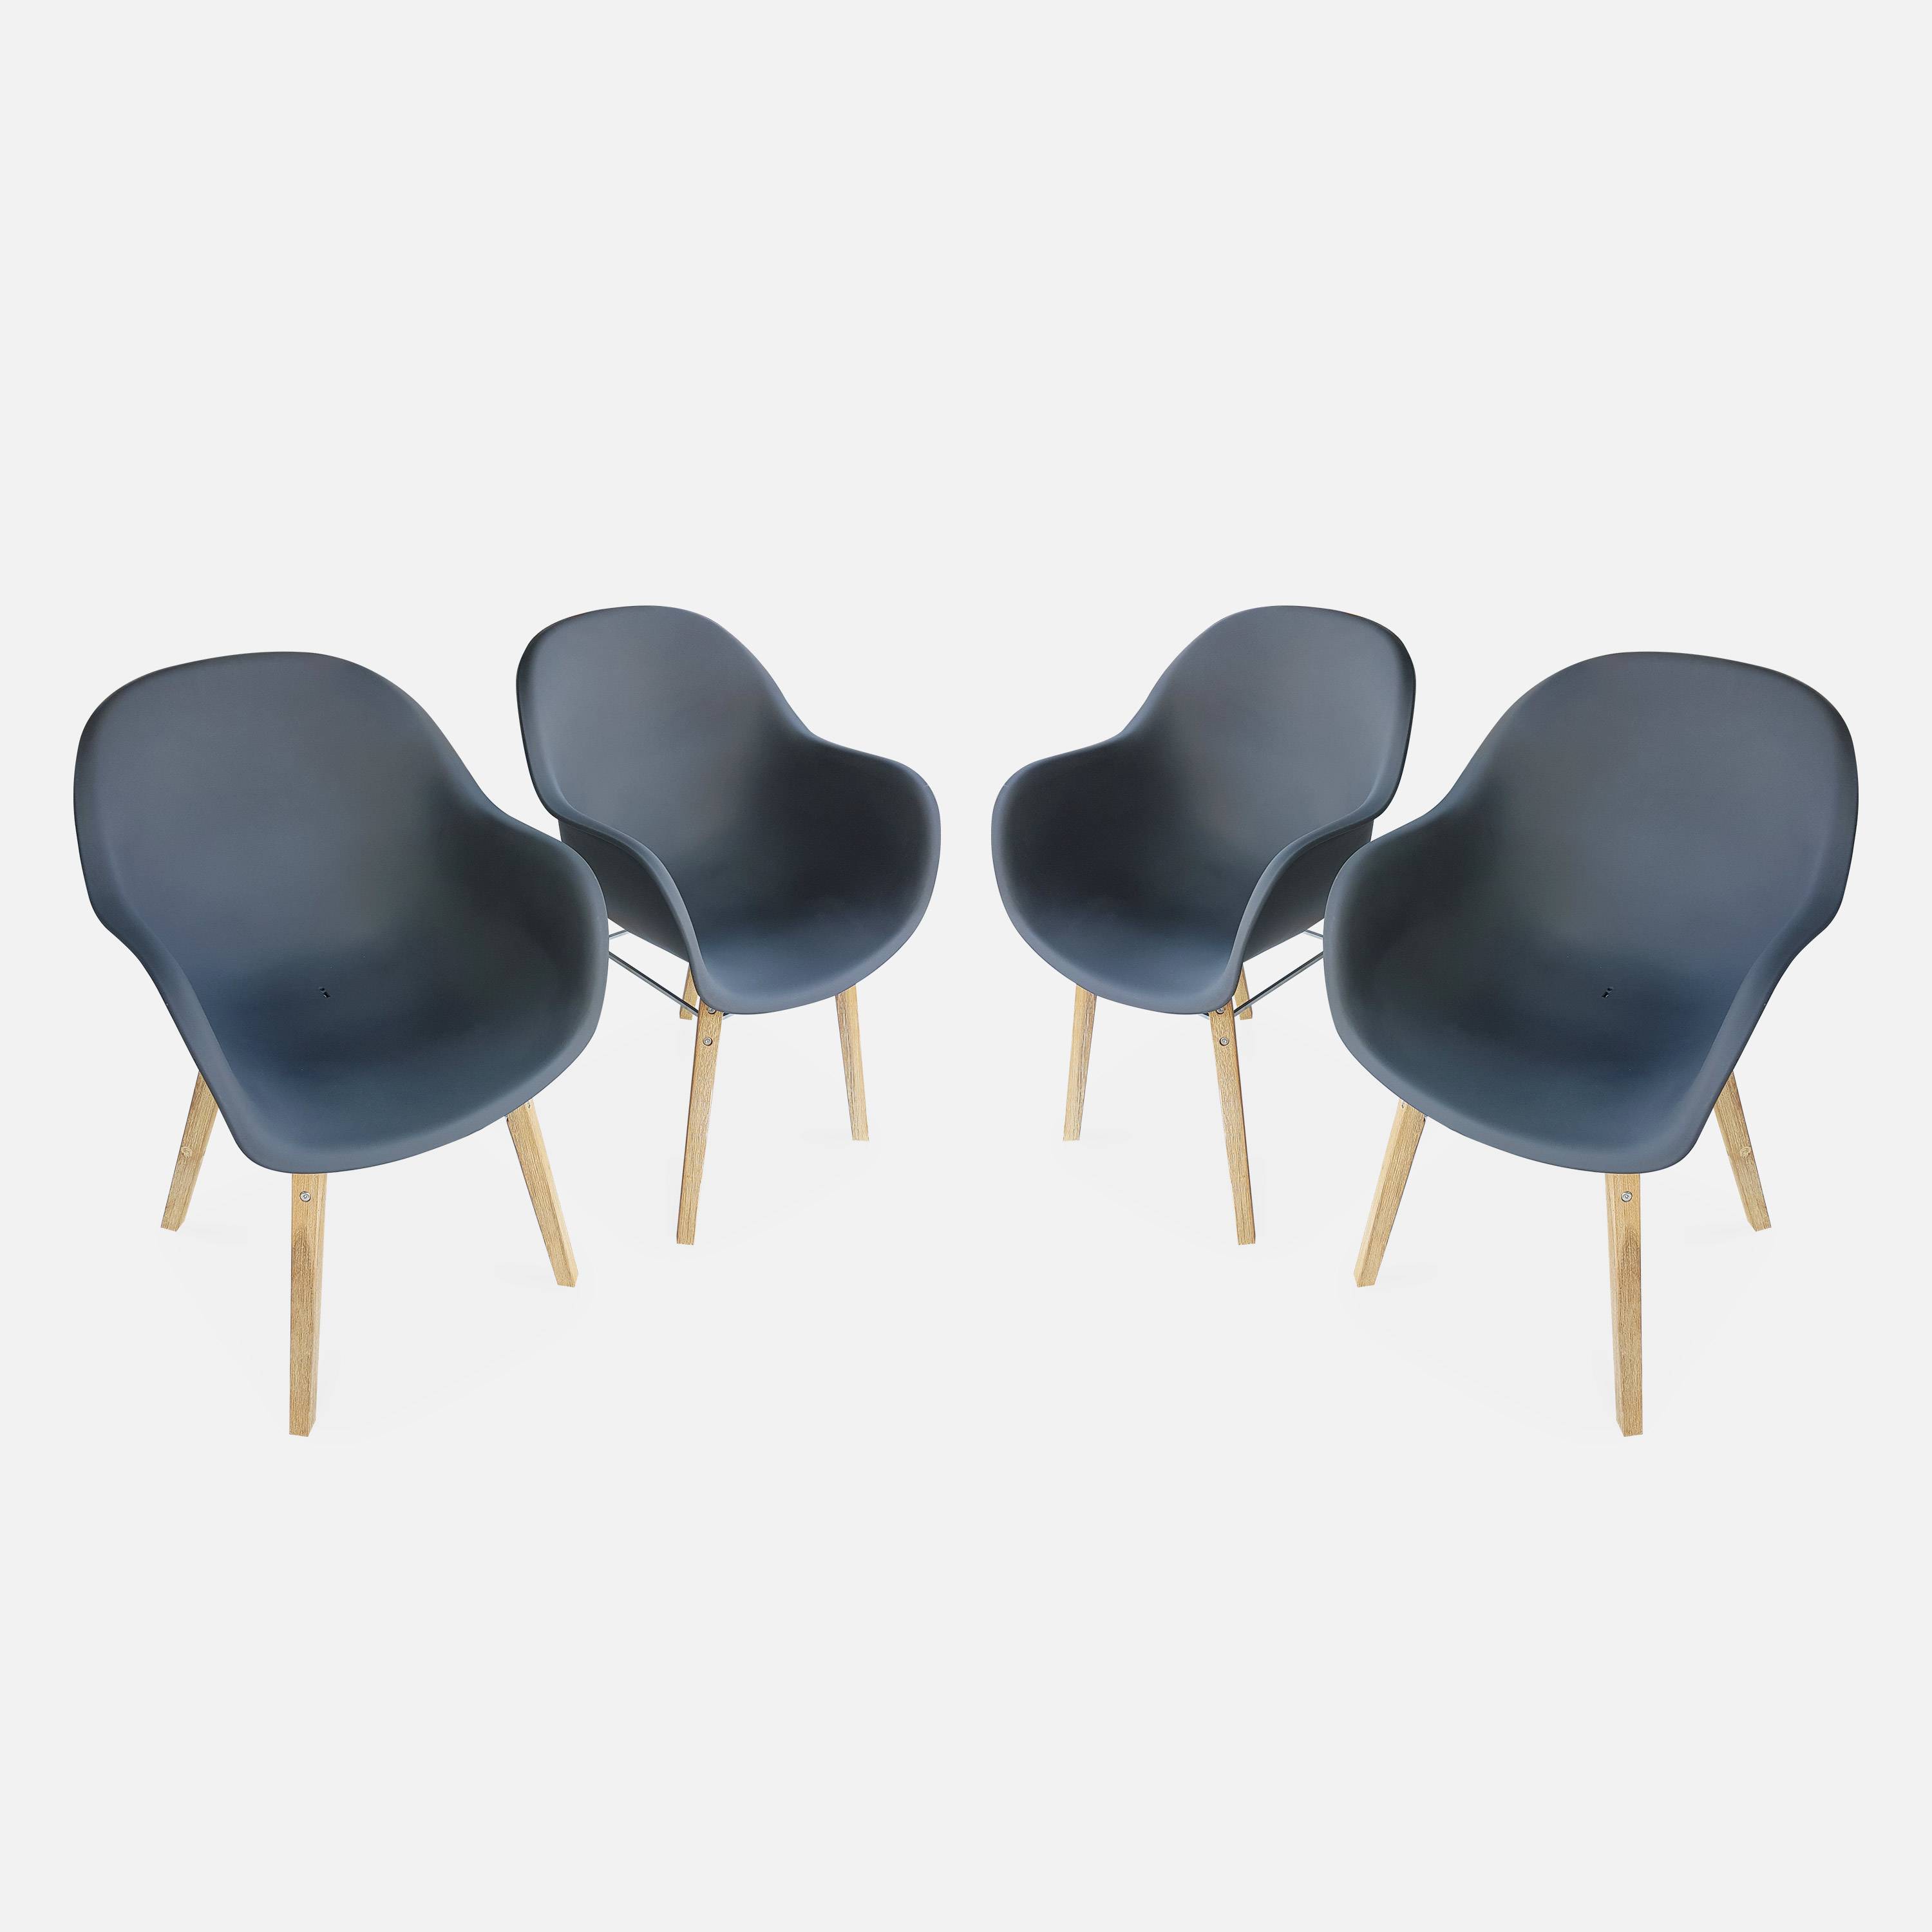 Set mit 4 CELEBES Skandinavischen Sesseln, Akazie und Kunststoff, grau, Innen/Außen Photo1